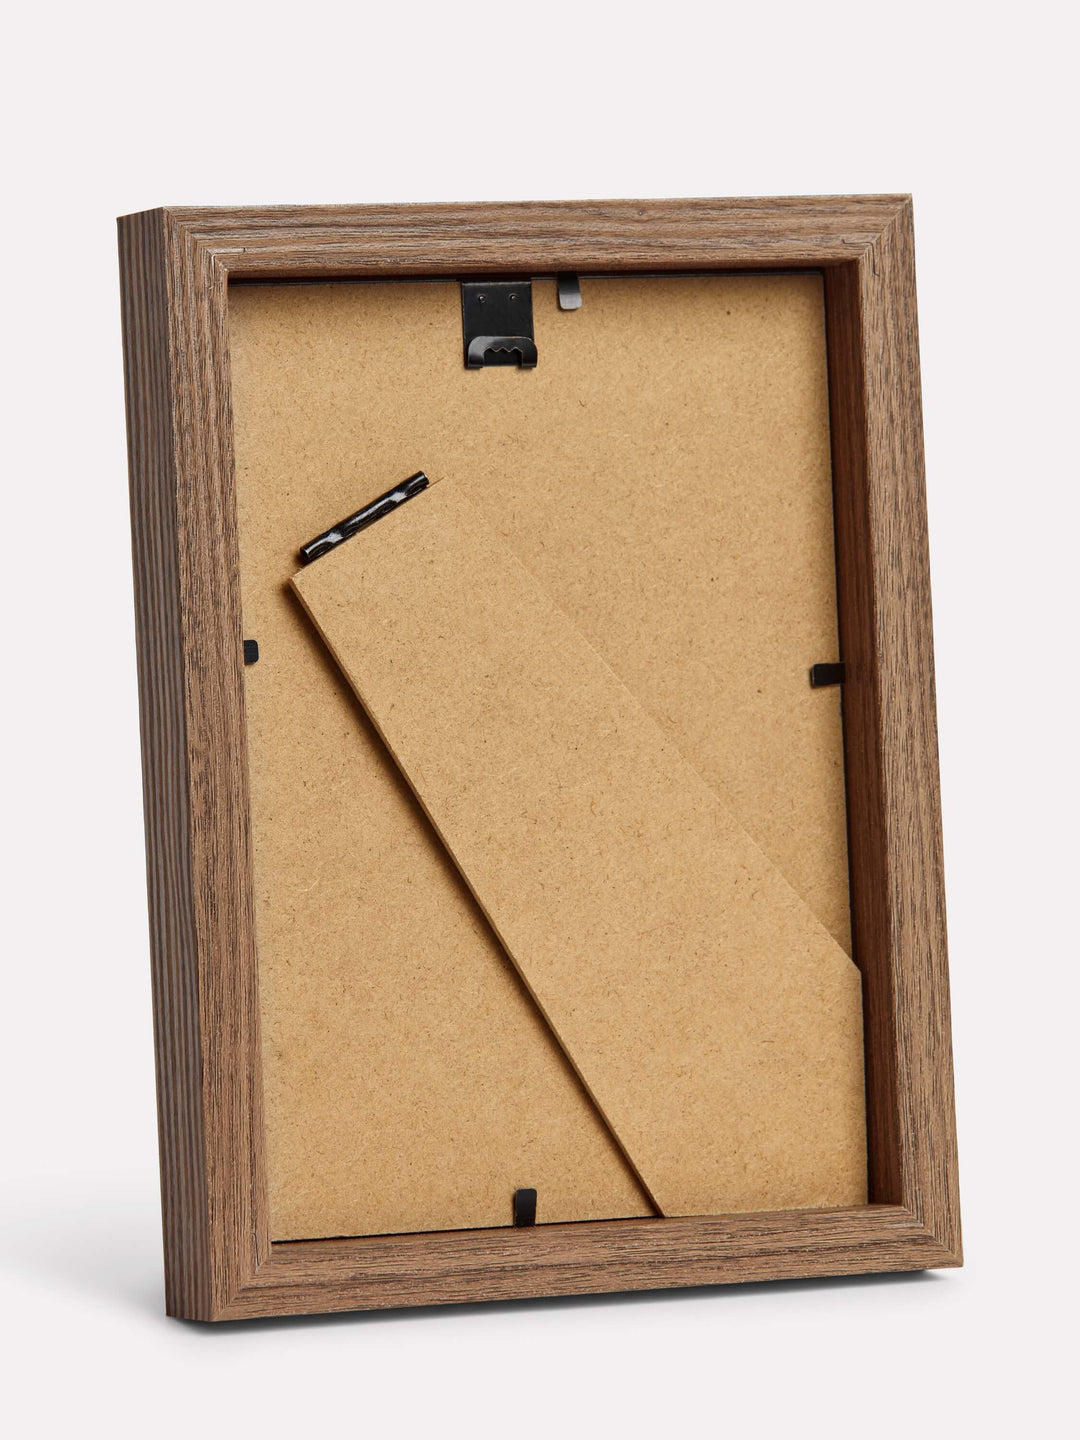 5x7-inch Classic Frame, Walnut - Back view